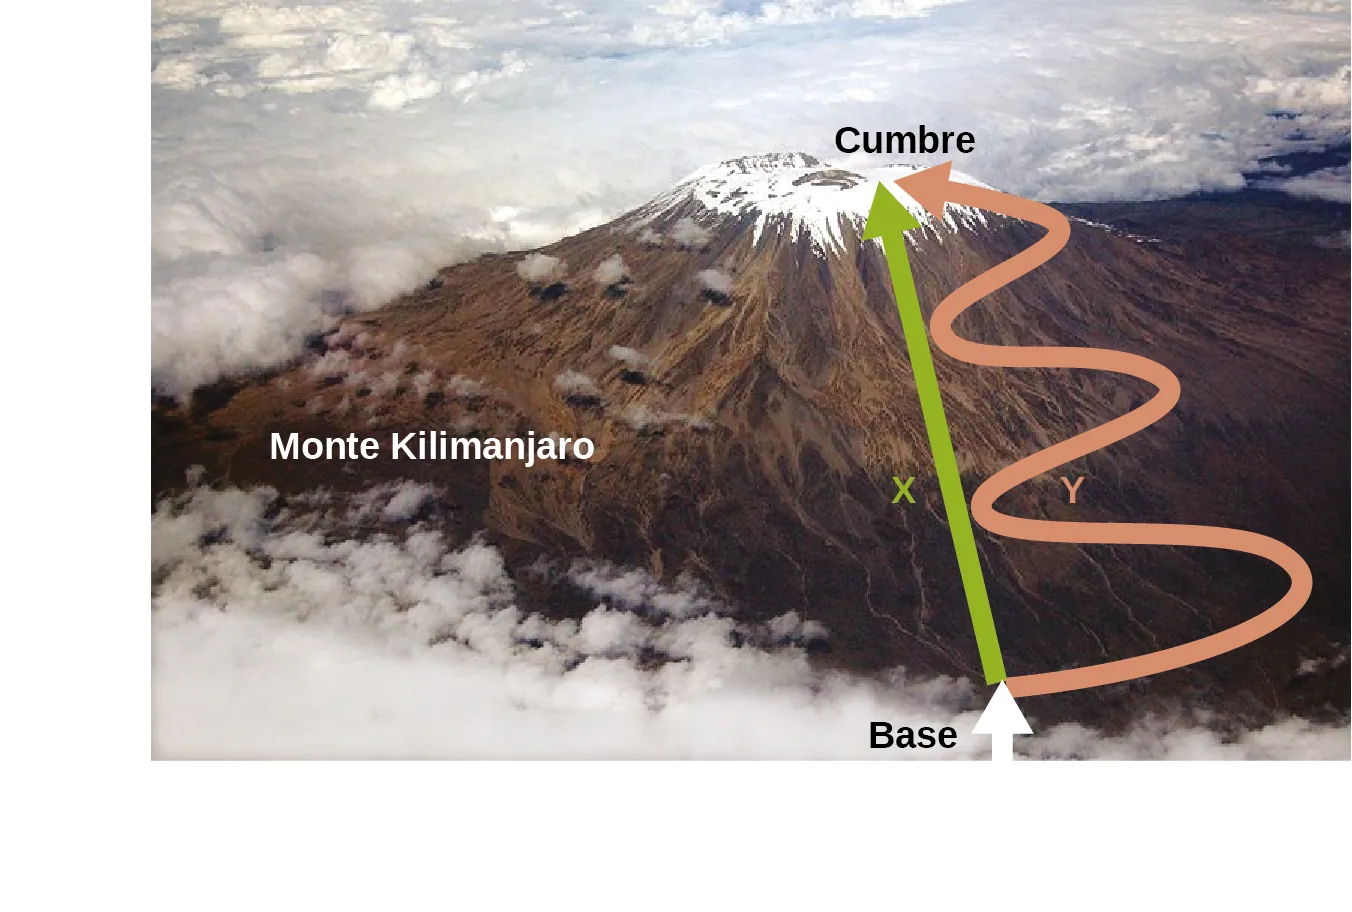 Una foto aérea muestra una vista del Monte Kilimanjaro. Se dibuja una flecha verde recta con una X desde el término "base" escrito en la base de la montaña, hasta el término "Cumbre" escrito en la cima de la montaña. Otra flecha etiquetada como Y se dibuja desde la base hasta la cima junto a la flecha verde, pero esta flecha es rosa y tiene tres grandes curvas en forma de S a lo largo de su longitud.